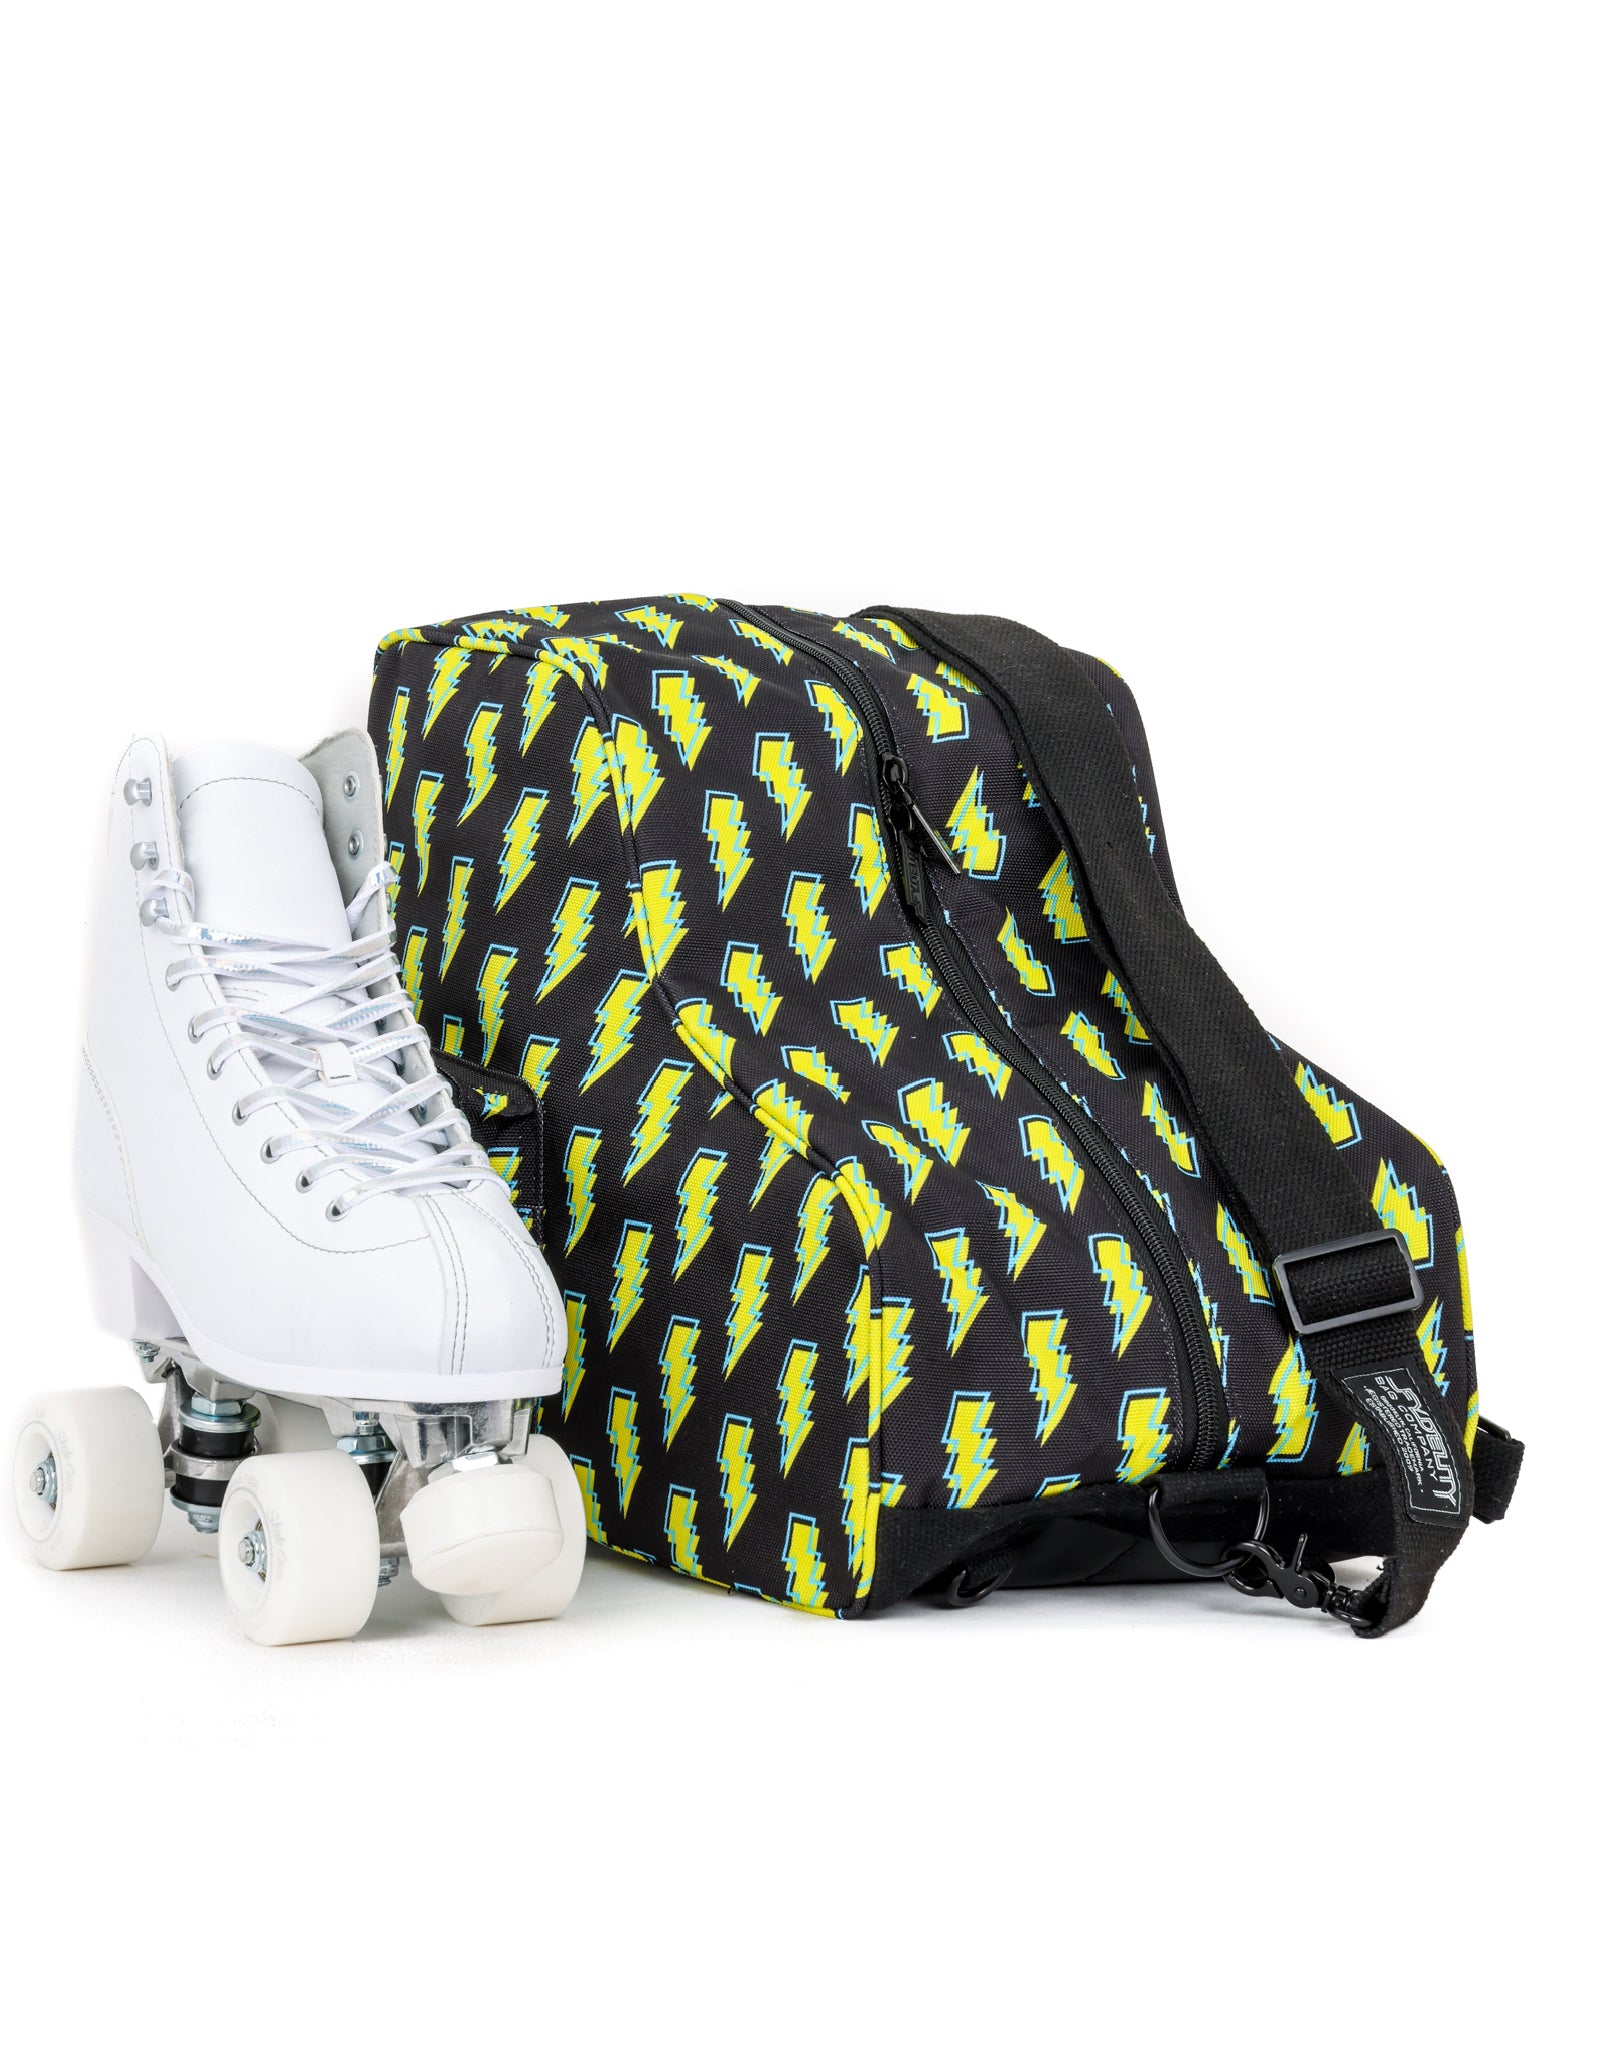 HONUTIGE Roller Skate Bag, Ski Sports Shoulder Oxford Cloth Carry Roller  Breathable Triangle Skate Bag, Premium Bag to Carry Ice Skates, Roller  Skates, Inline Skates for Kids and Adults Pink